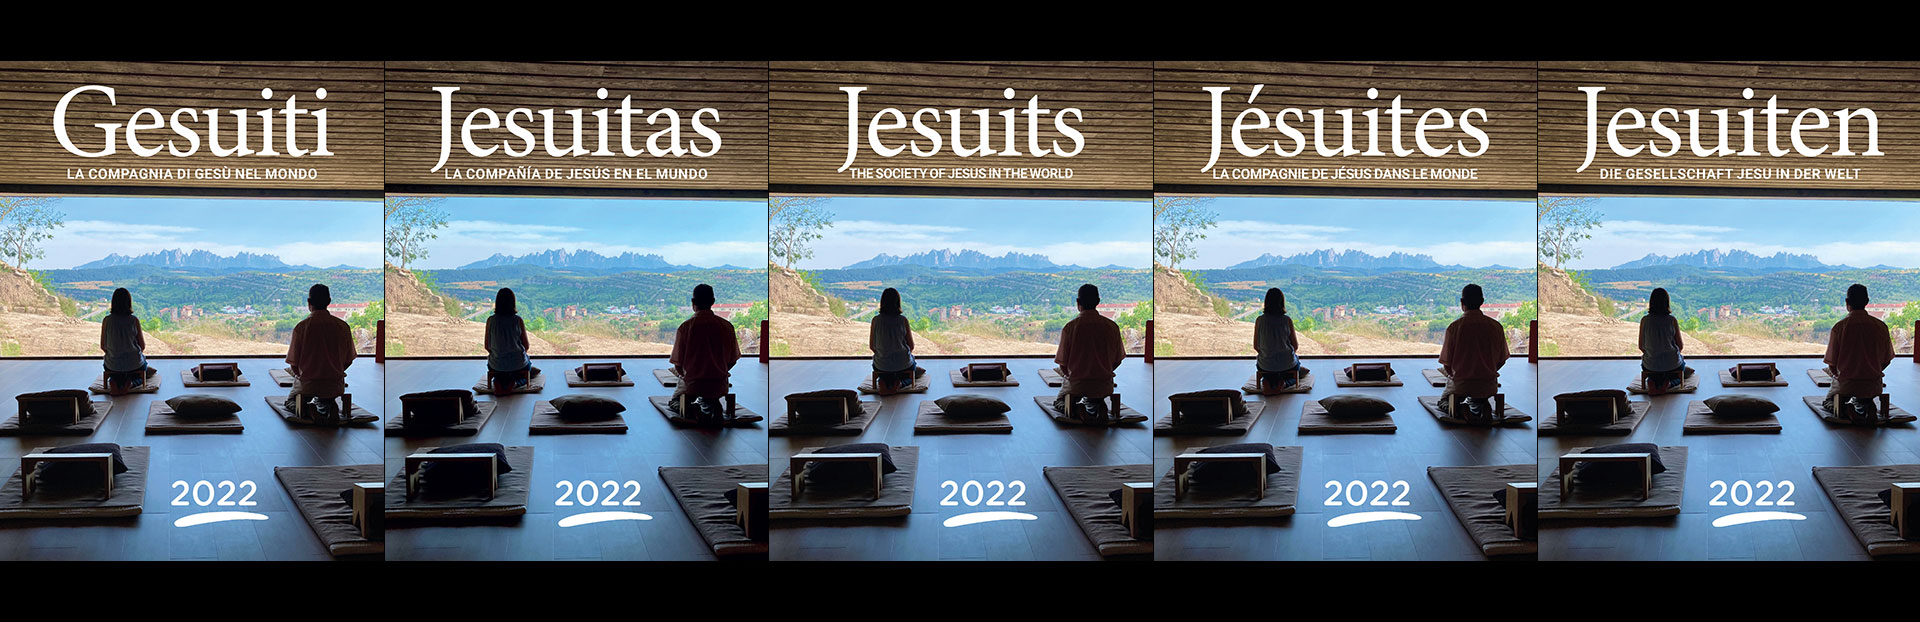 Jesuitas 2022 – Ahora disponible online